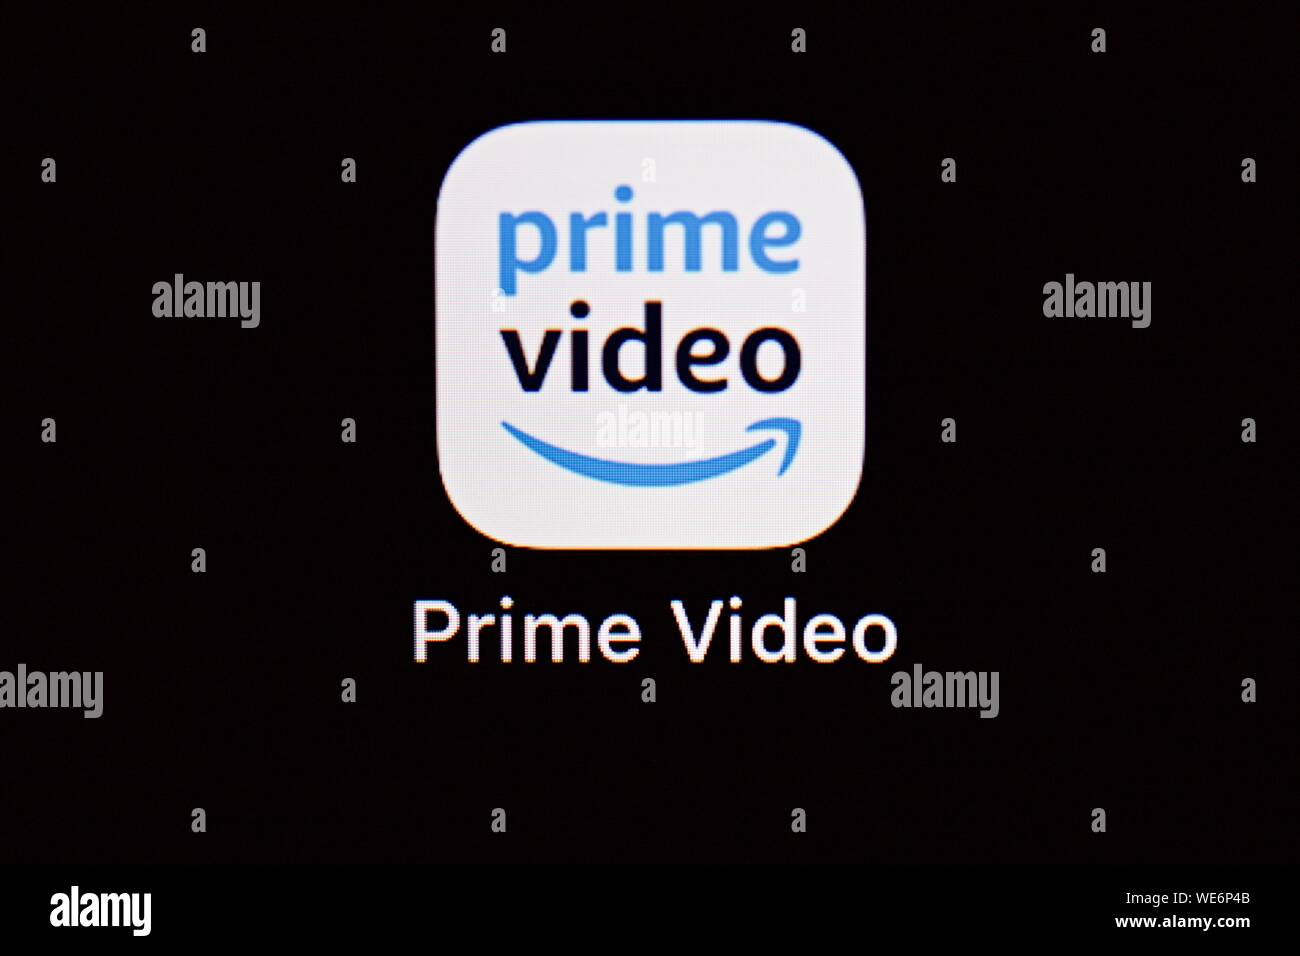 Amazon Prime Video Stockfotos Und Bilder Kaufen Alamy